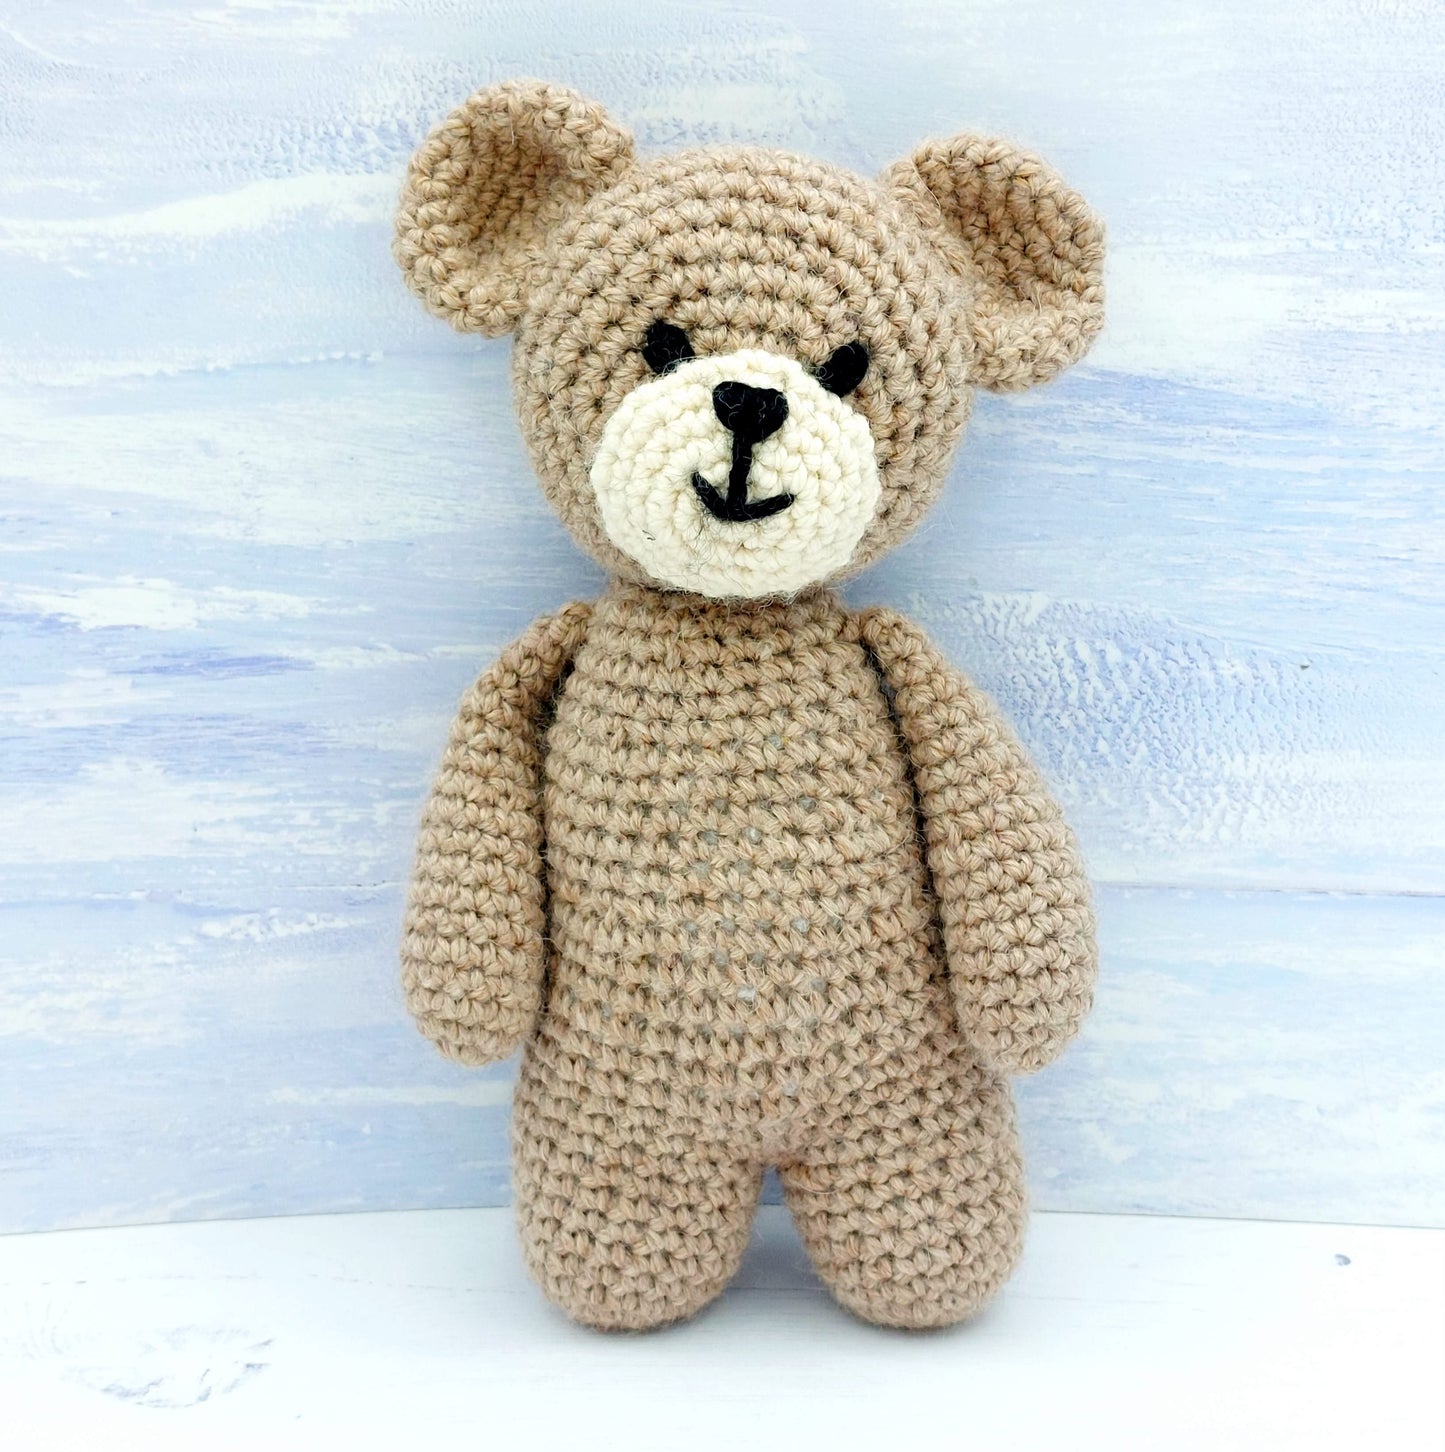 Teddy the Crochet Bear